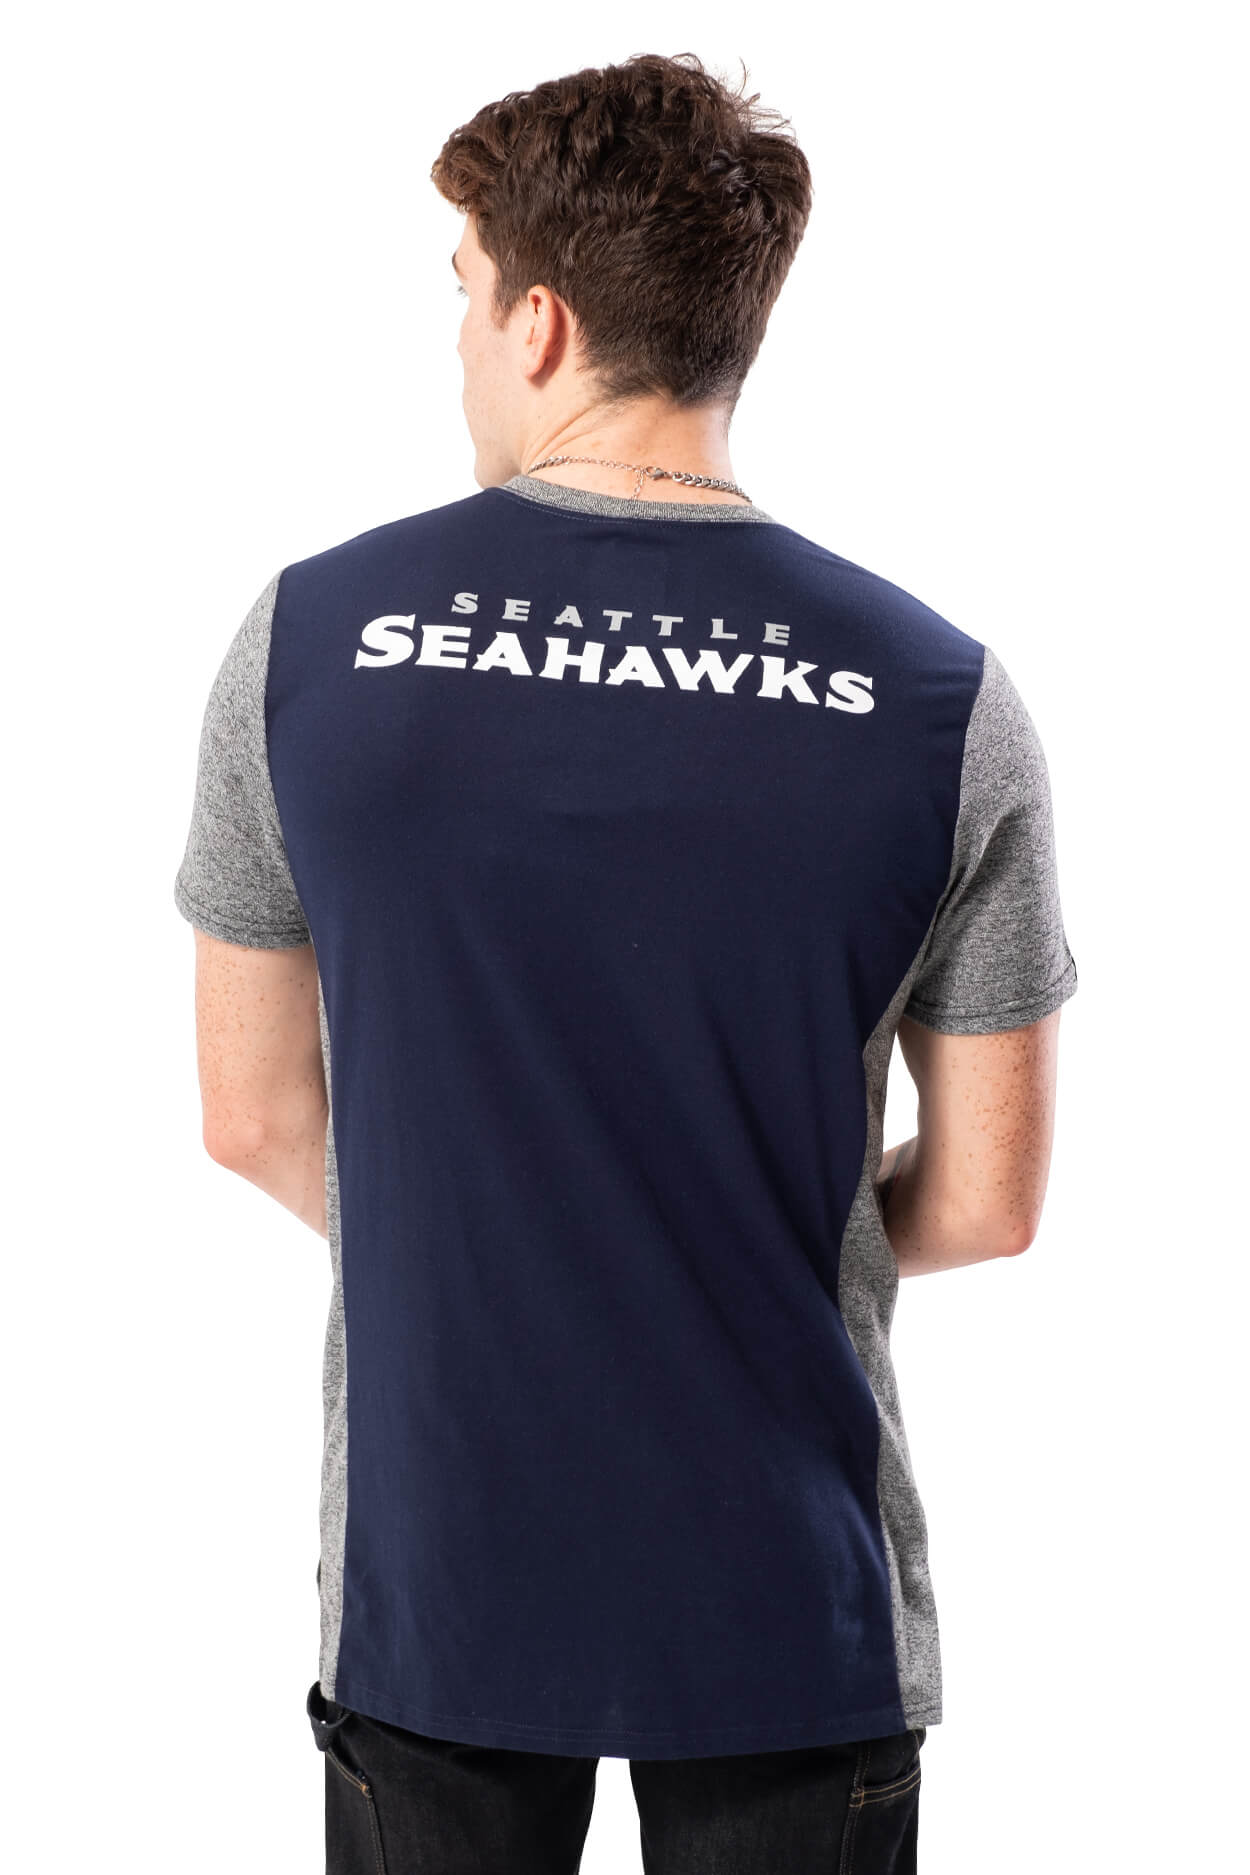 NFL Seattle Seahawks Men's Raglan Short Sleeve Tee|Seattle Seahawks